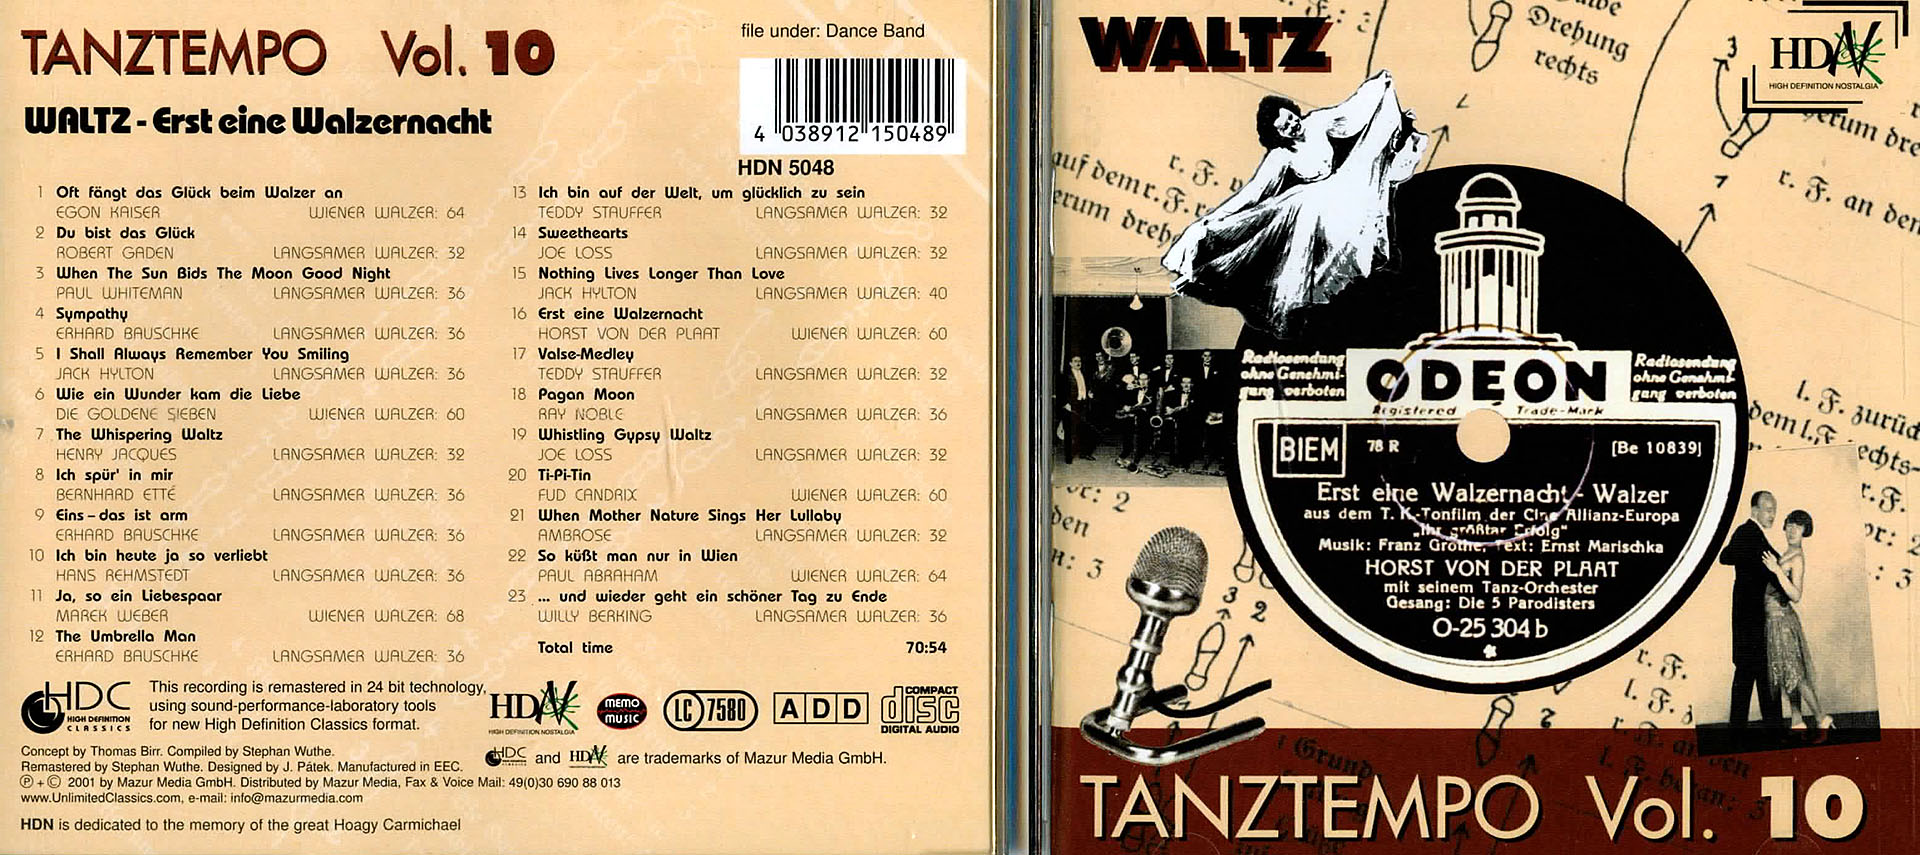 Waltz - Tanztempo Vol. 10